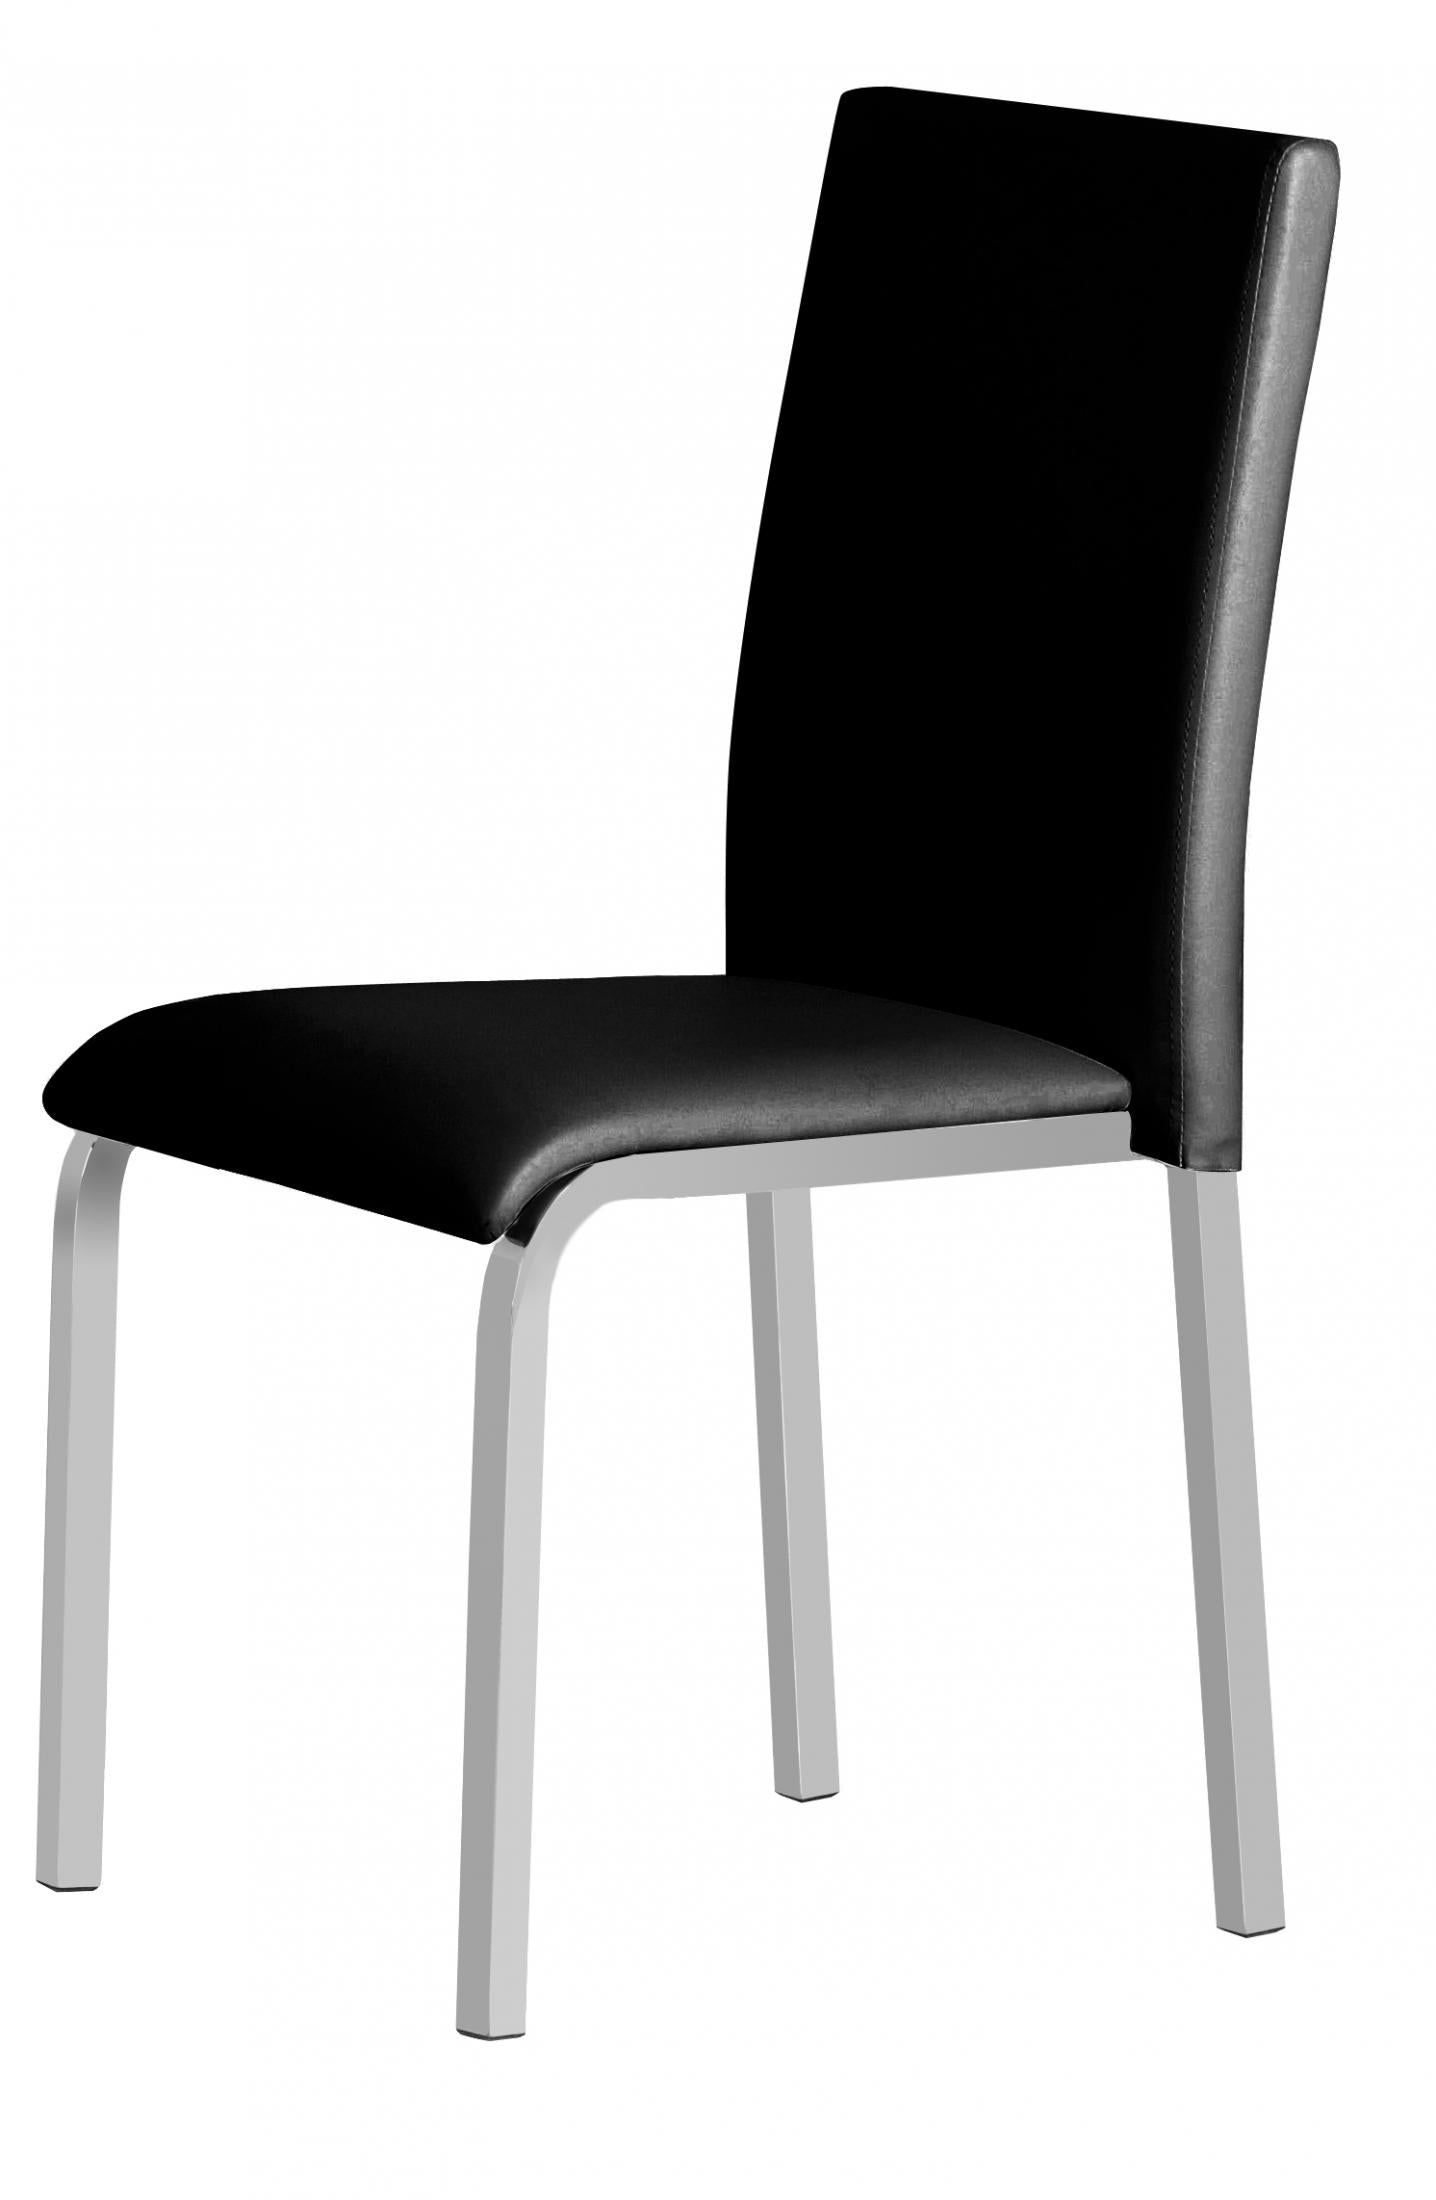 Gamma PVC Chair Black & Chrome